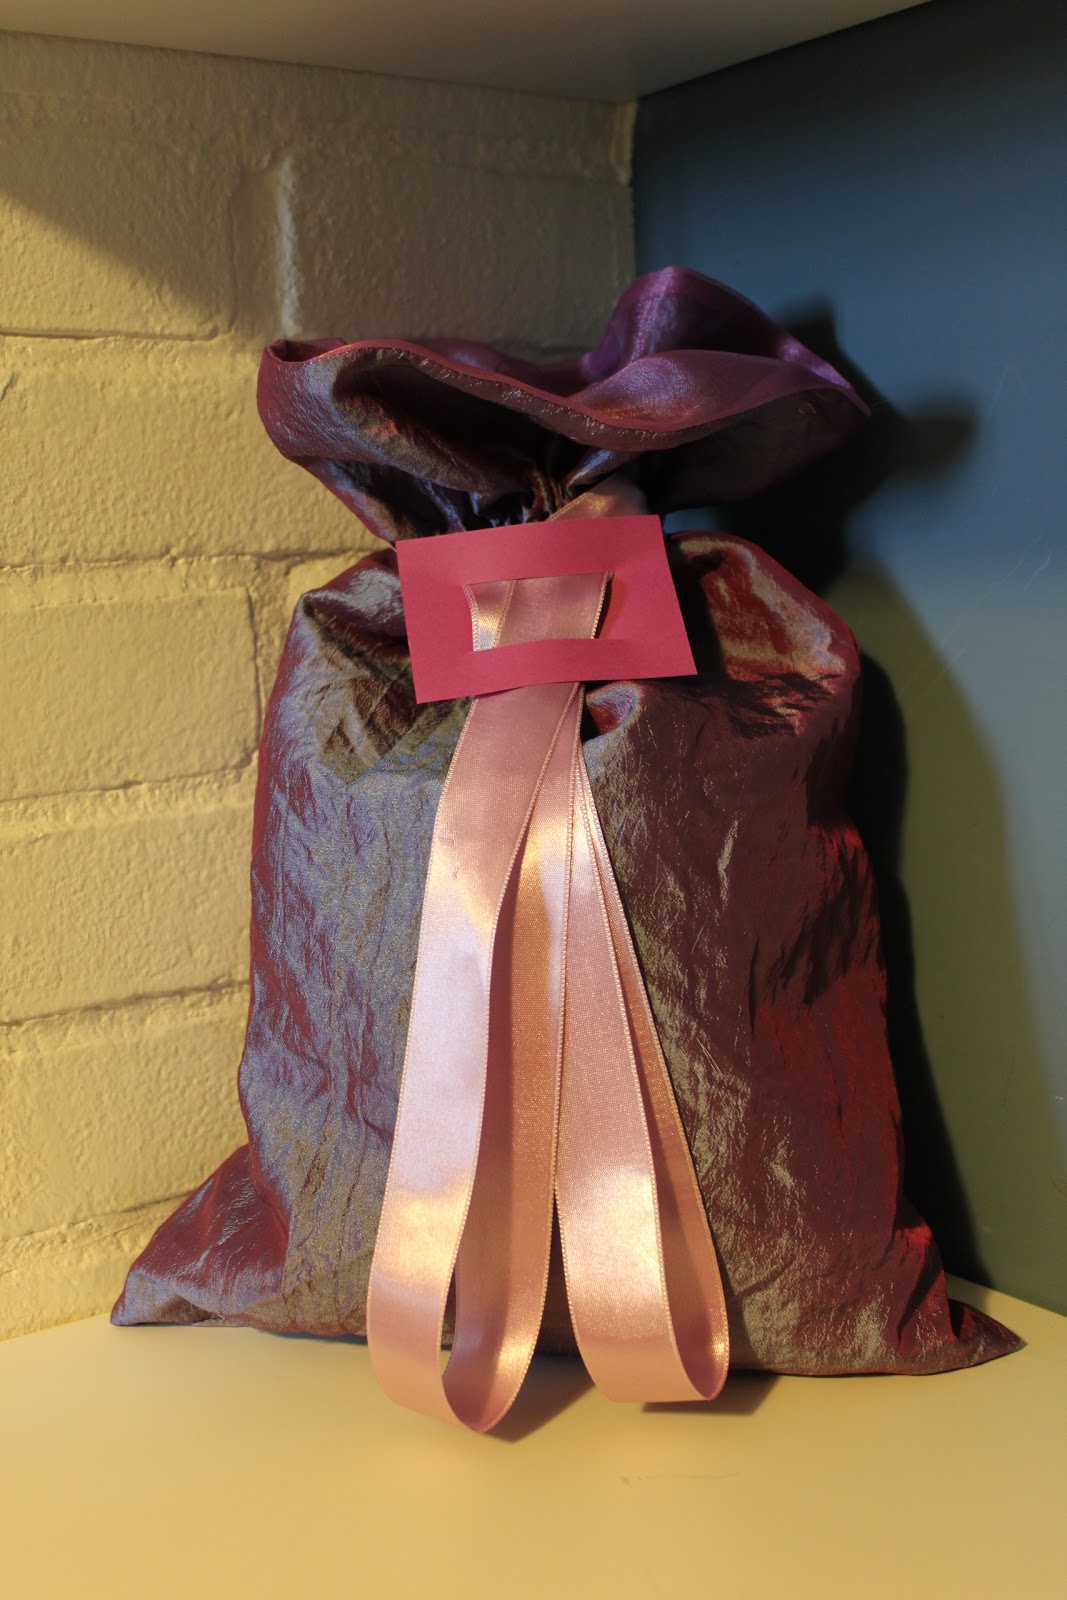 Scuola di cucito: Confezionare i regali con i sacchetti di stoffa